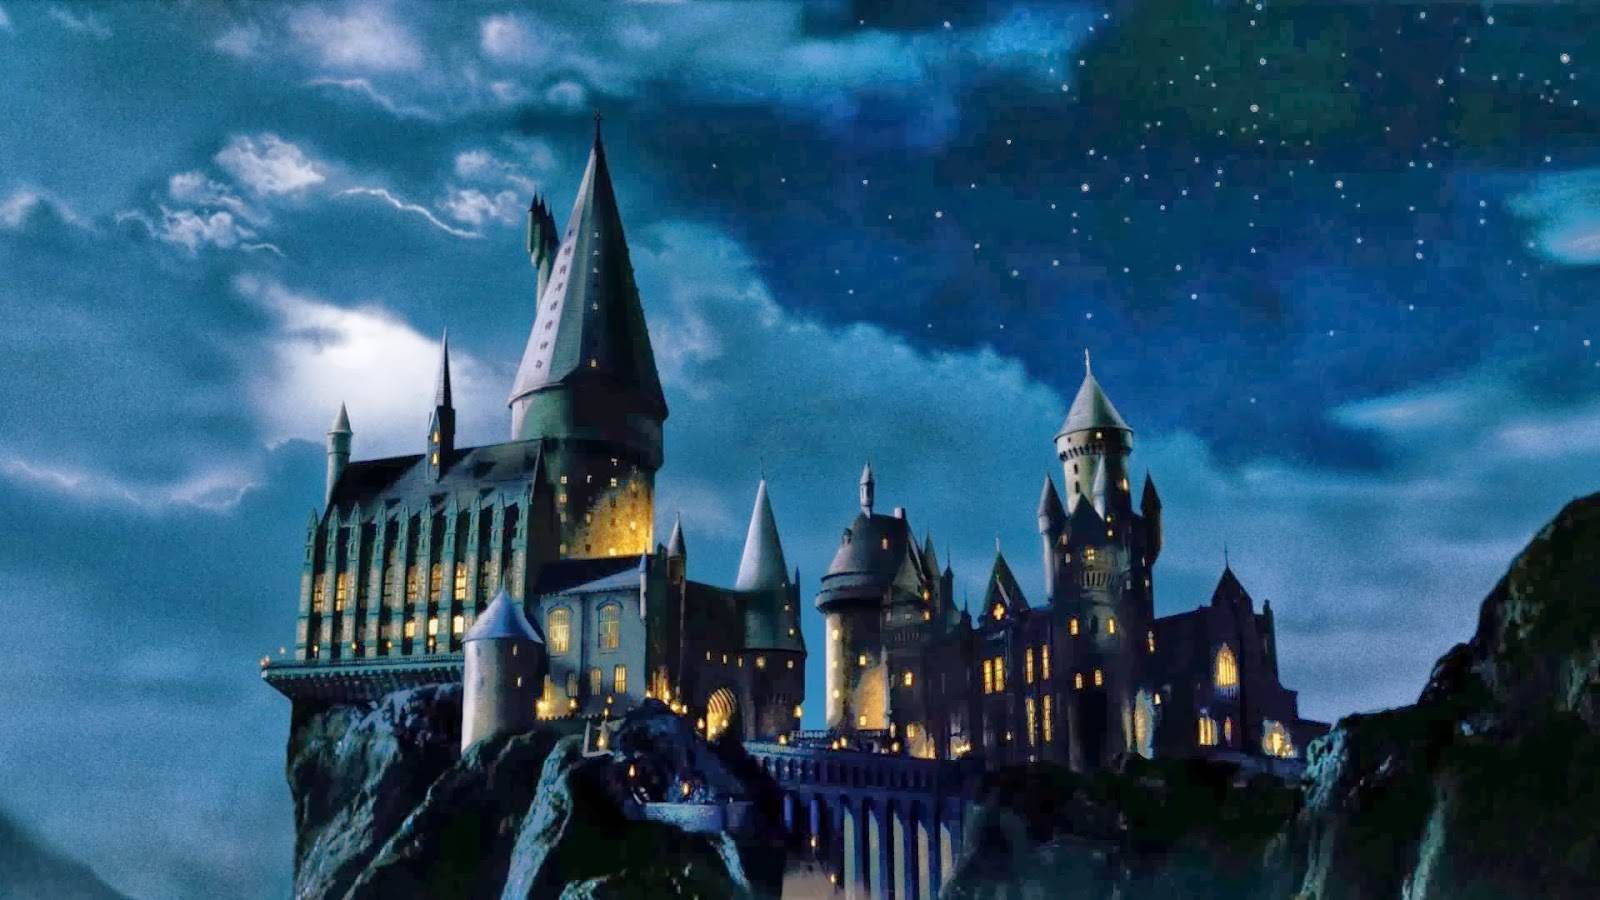 Lối đi nhỏ, ngả rẽ và những ngôi nhà cổ kính... Hogwarts Harry Potter Desktop Wallpapers mang đến cho bạn không gian mơ mộng như một tác phẩm nghệ thuật đầy thu hút. Sử dụng chúng để thêm phần sáng tạo cho chiếc máy tính của bạn và tận hưởng khoảng thời gian làm việc với cảm xúc thích thú.